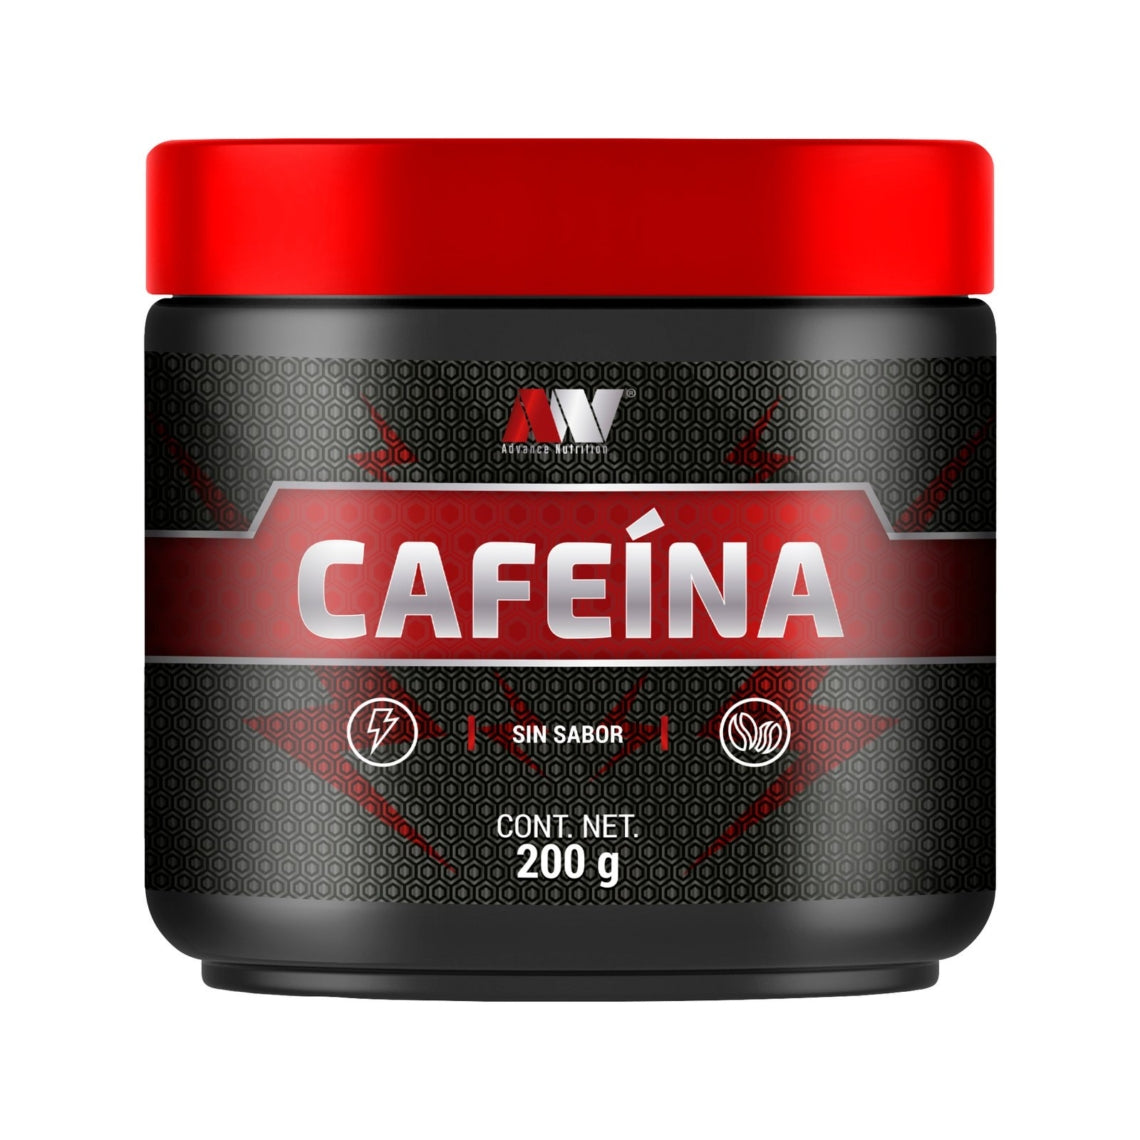 Cafeína, 200g – Advance Nutrition